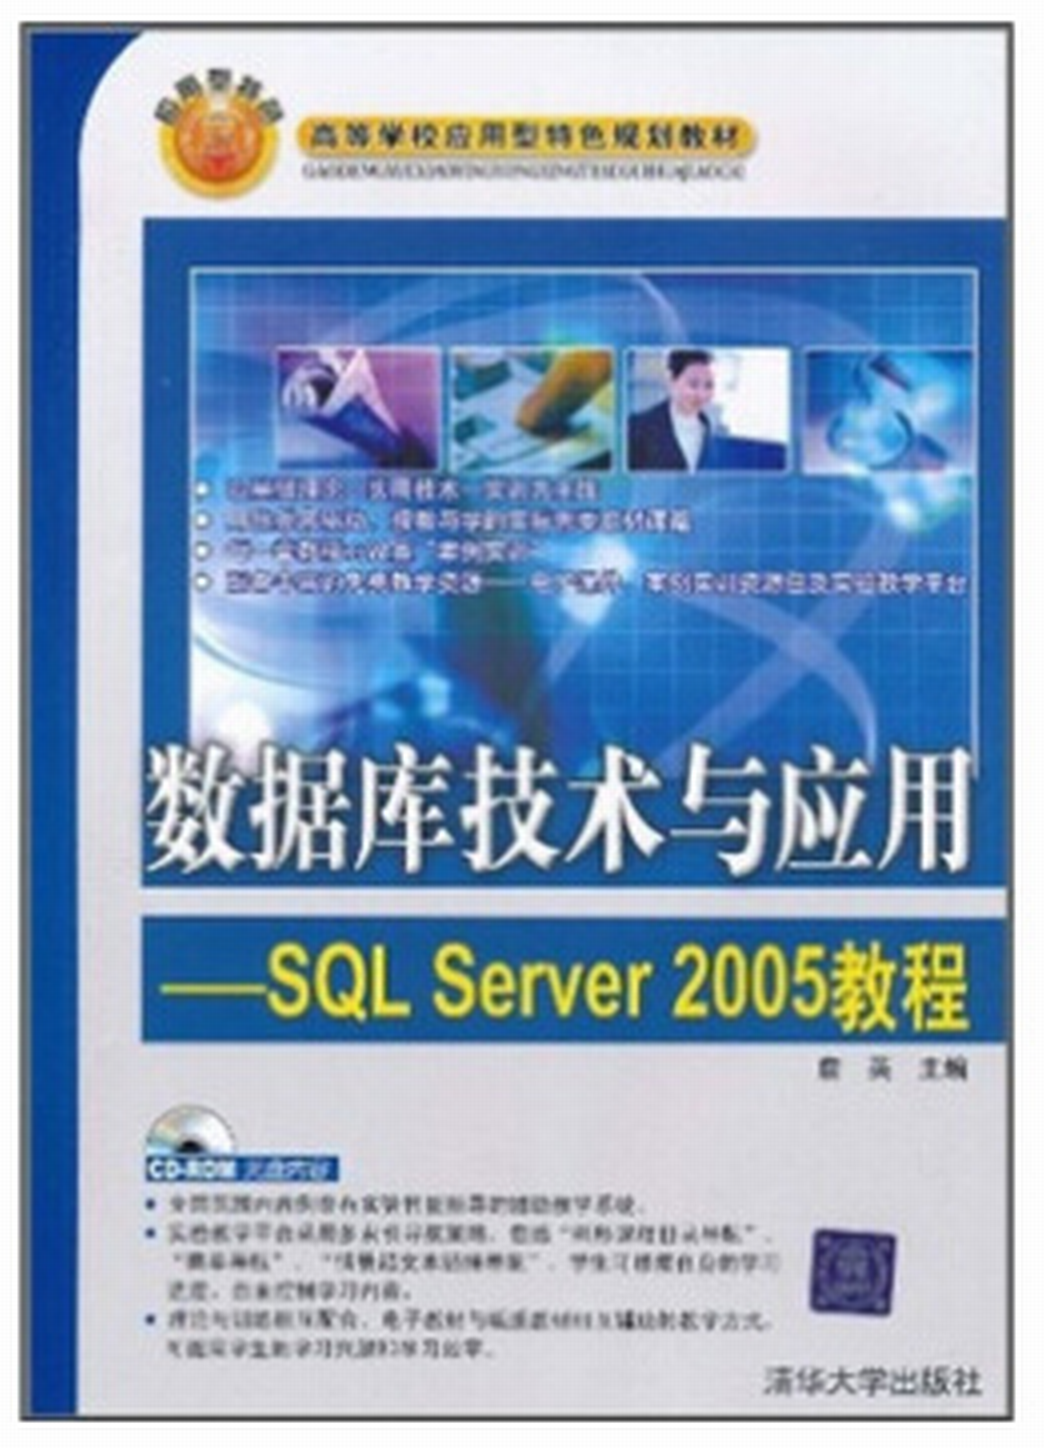 資料庫技術與套用—SQL Server 2005教程